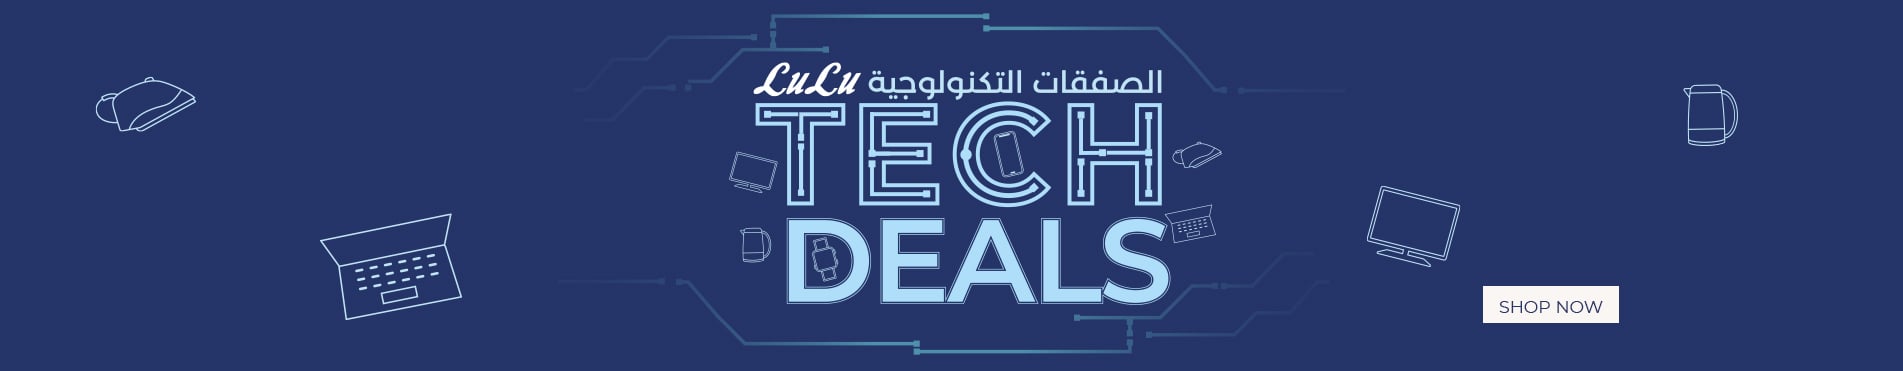 Tech deals may